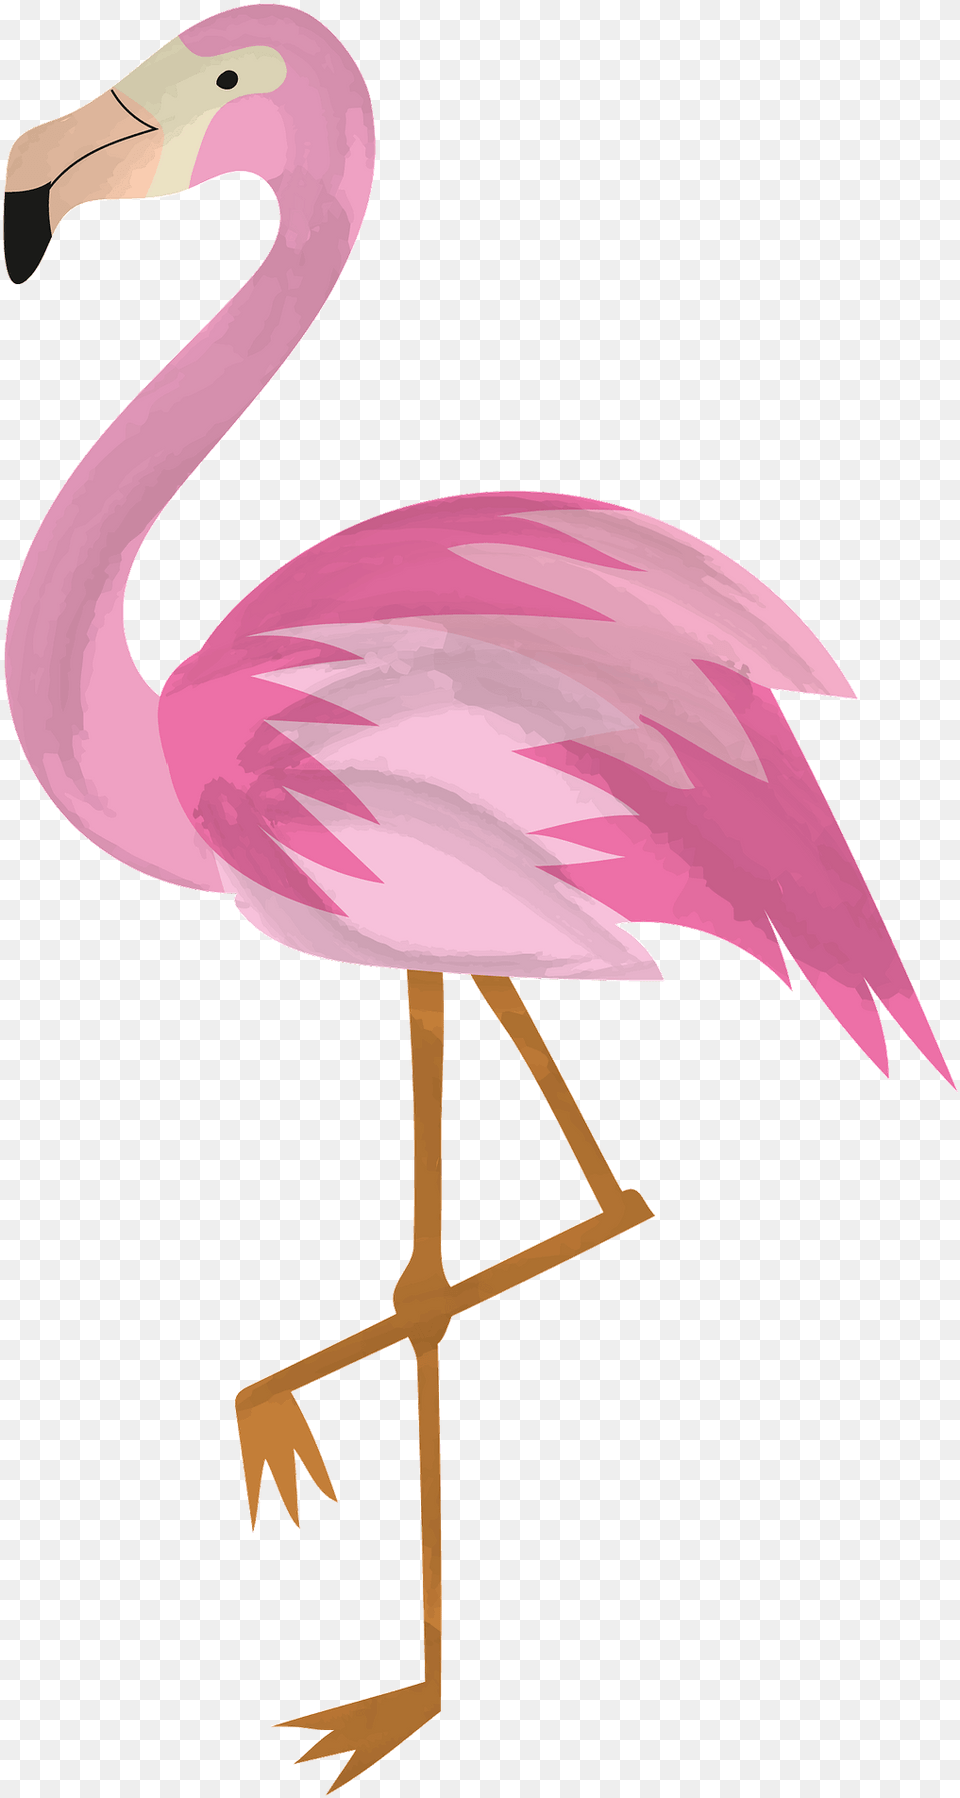 Flamingo Clipart, Animal, Bird Png Image